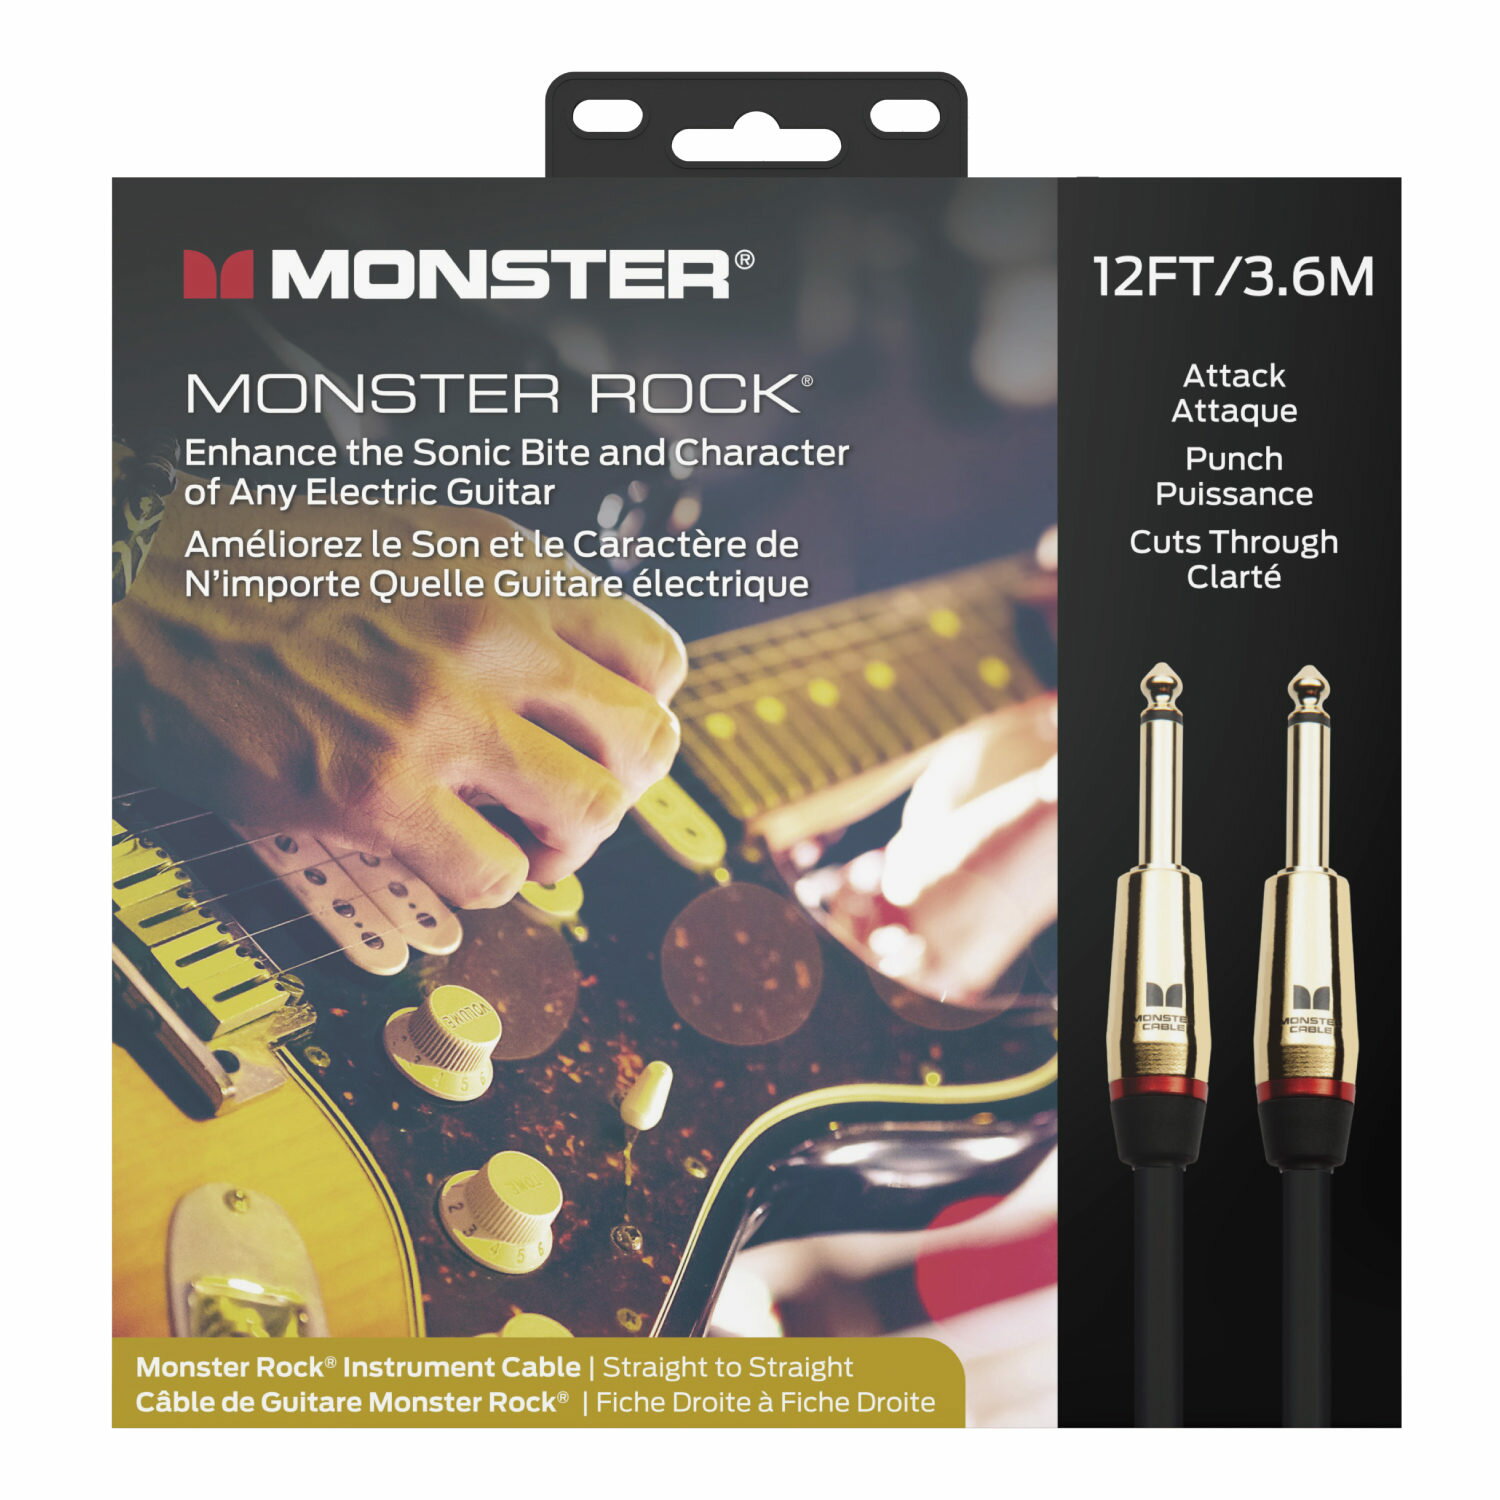 商品情報メーカー名Monster Cable（モンスターケーブル）注意事項モニター発色の具合により、実物とは色合いが異なる場合がございます。Monster CABLE - MONSTER ROCK ギターケーブル SS 3.6m M ROCK2-12 モンスターケーブル 劇的に音質が向上！モンスターケーブル は使ってみると「その違い」が解ります！ モンスターケーブル = 高価な ギターケーブル というイメージがあり、なかなか手が出せずにいるギタリストも多いと思います。確かに「汎用的」な安価なシールドコードでも使えますが音に拘るならこのモンスターケーブルを試してみてください。音の伝達は重要です音が出ればなんでもいいじゃん！って声も耳にします。確かに間違いではありませんが、どうせならギターから出力される信号を余すことなくエフェクターやアンプに伝えたくないですか？このモンスターケーブルの特質するべきポイントは、音のレンジ感、伝達速度や輪郭がまるで違います。モンスターケーブルの構造は一般的なシールドコードとは異なり、独自の特許取得済み「3Way マルチゲージネットワーク構造」を採用しています。シールドケーブルは「単芯」 or 「2芯」が一般的ですが、周波数毎に「伝達速度が異なる」という問題があります。ギターからの信号がシールドコードを通りエフェクターやアンプに到達するのですが、一般的なシールドは、送られてきた信号が低音域から高音域まで順不同に到着する型となります。順番に関係なくバラバラの状態で流れていく為、低密度の音声信号がアンプ等に入っていきます。モンスターケーブルの3Wayマルチゲージネットワーク構造の場合、低音用、中音用、高音用といった「3本の芯線」を採用した事で「伝達速度の統一」が可能となりました。つまり専用の芯線を通ることにより、ピックアップから作り出された低音から高音までの信号が「同じ速度」で流れ、「同じタイミング」でアンプ回路に到着するようになっています。これにより、密度の高い音声信号をアンプ回路に送ることが可能となり、これが伝達速度と輪郭に影響しています。Monster Cable の何がいいの？まず、サウンド全体のダイナミクスレンジが広がり、出ていなかった中域や低域が出力されたりと、根本的なサウンドの品質が向上します。ピッキングへの反応速度も速いです。以下の構造画像の通り、一般的なシールドには無い低域と中高域が専用線となっている事で圧倒的な品質の差が出ています。どのシールドからモンスターに代えるか？にもよりますが一般的な安めのケーブルからのアップグレードの場合 エフェクターか？くらい変わりますので一度試してみてください。 2